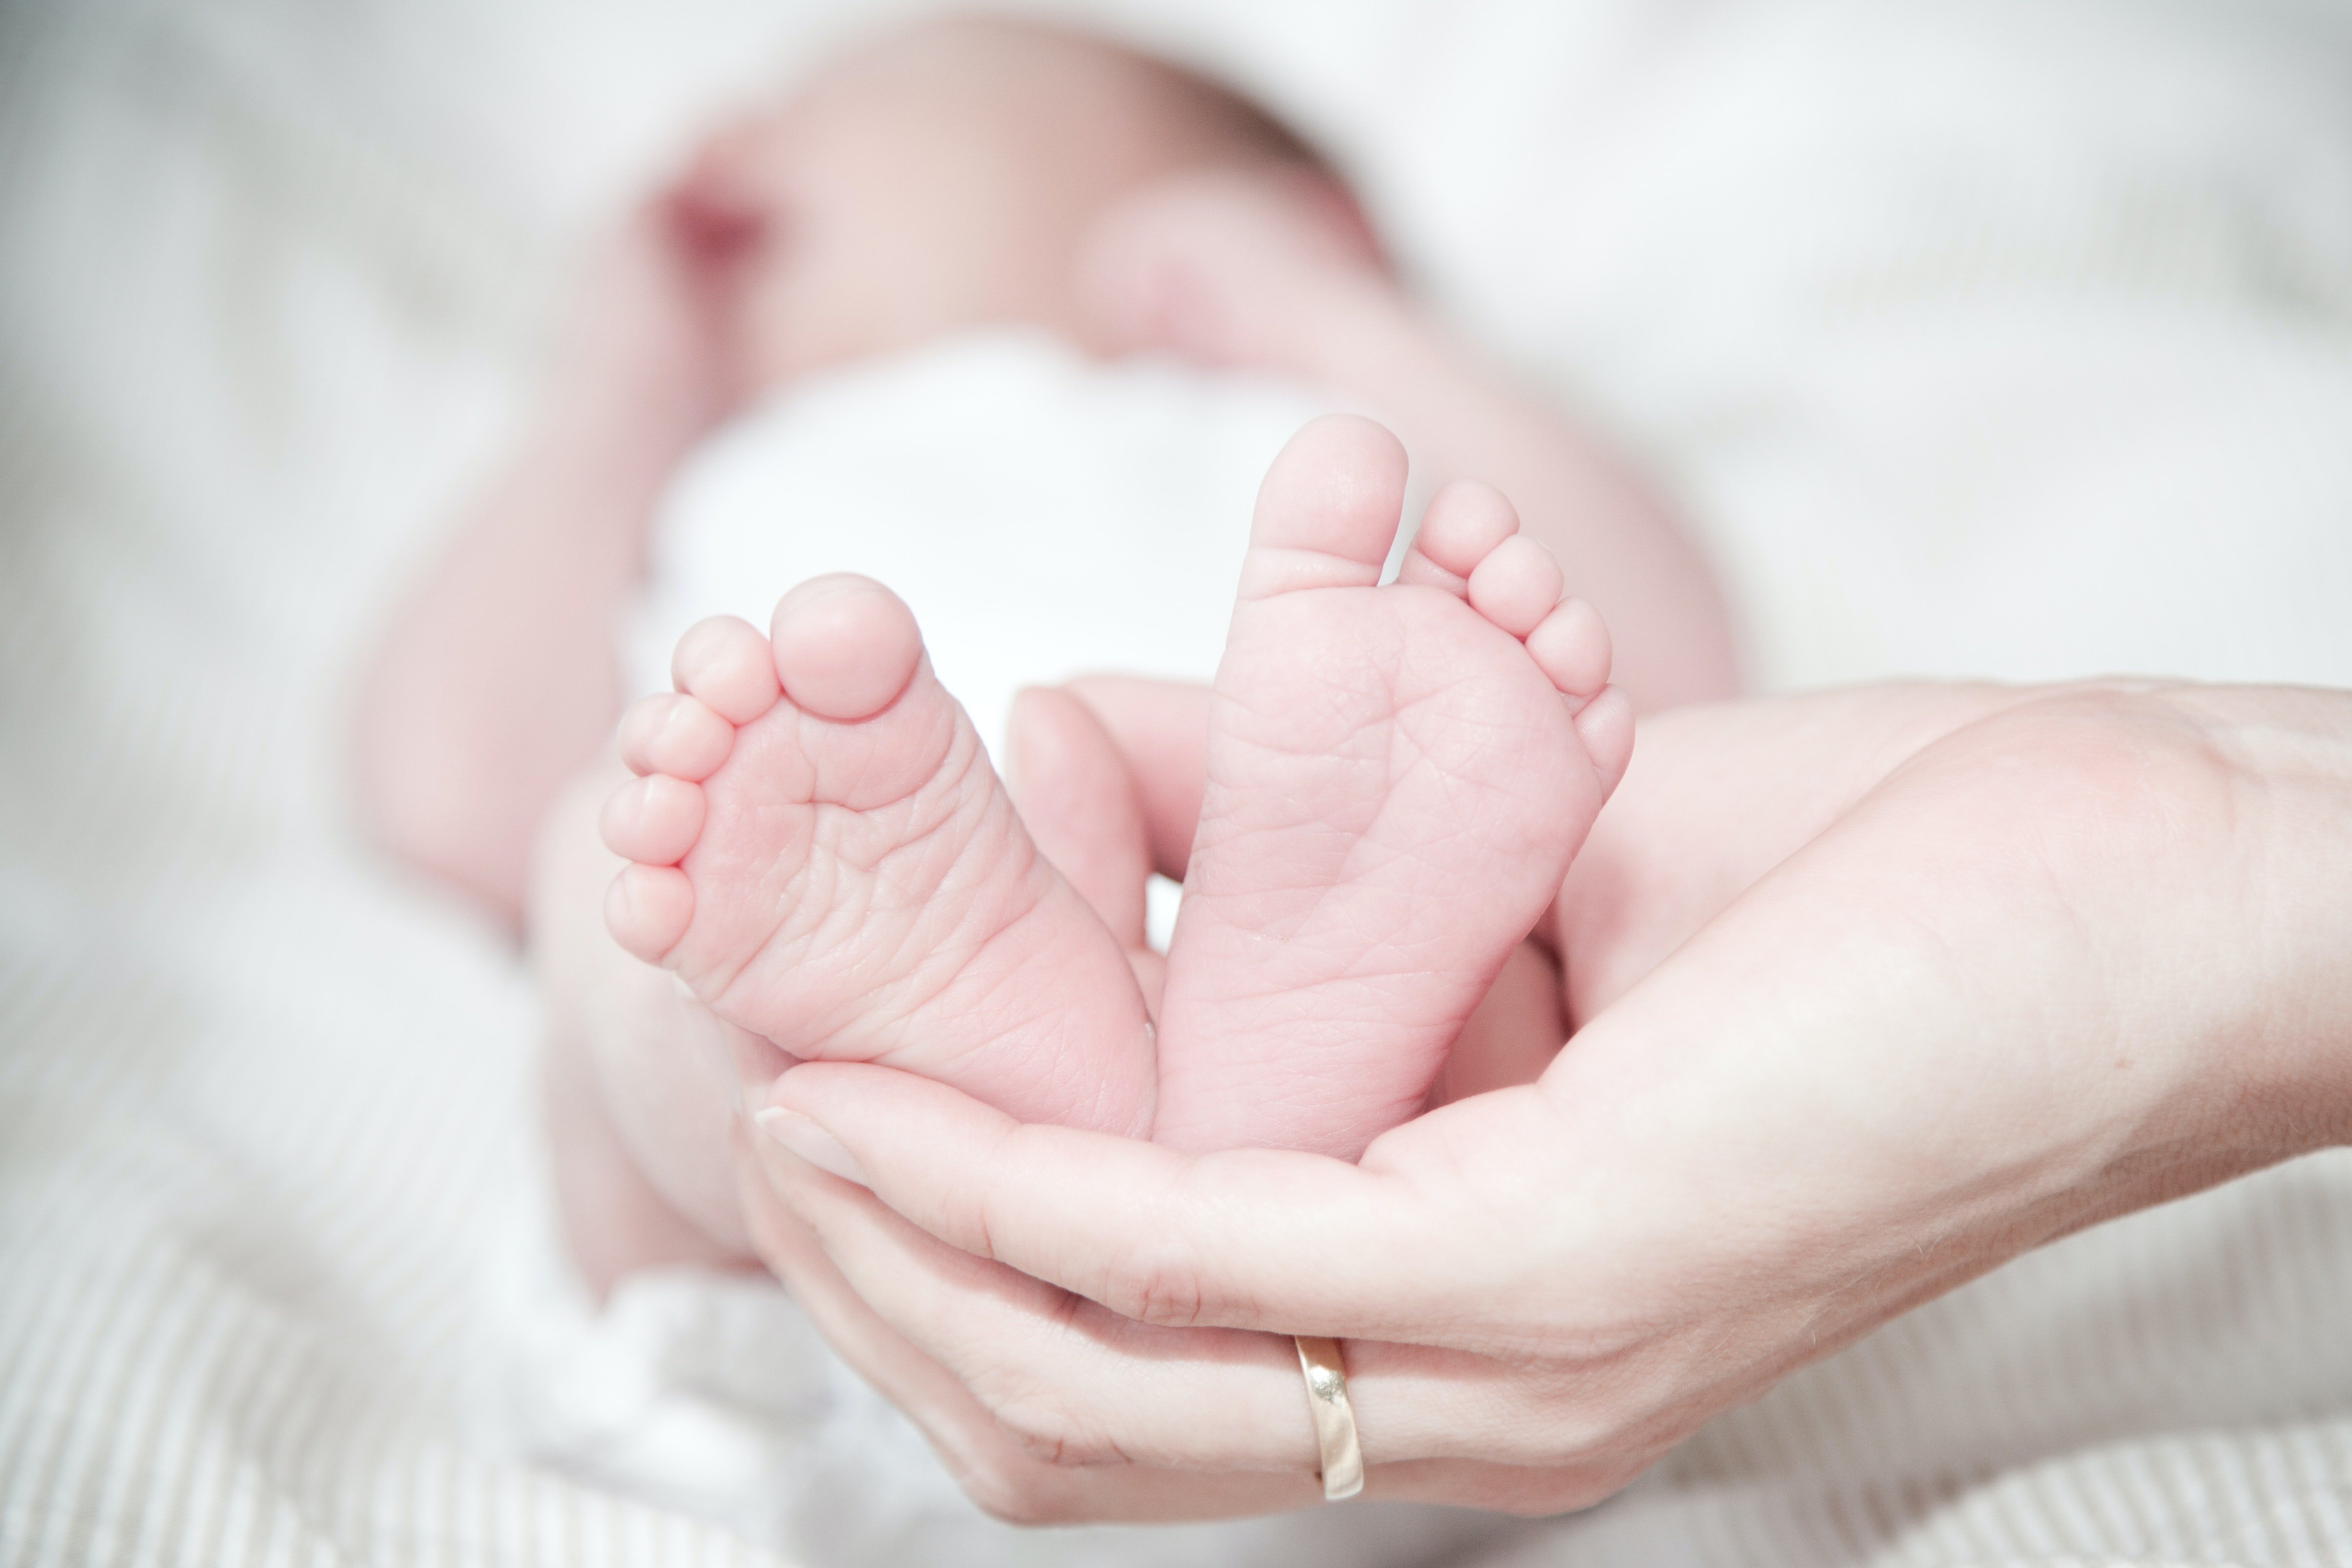 Die Geburt war sicher und Mutter und Kind waren in einem gesunden Zustand | Quelle: Pexels